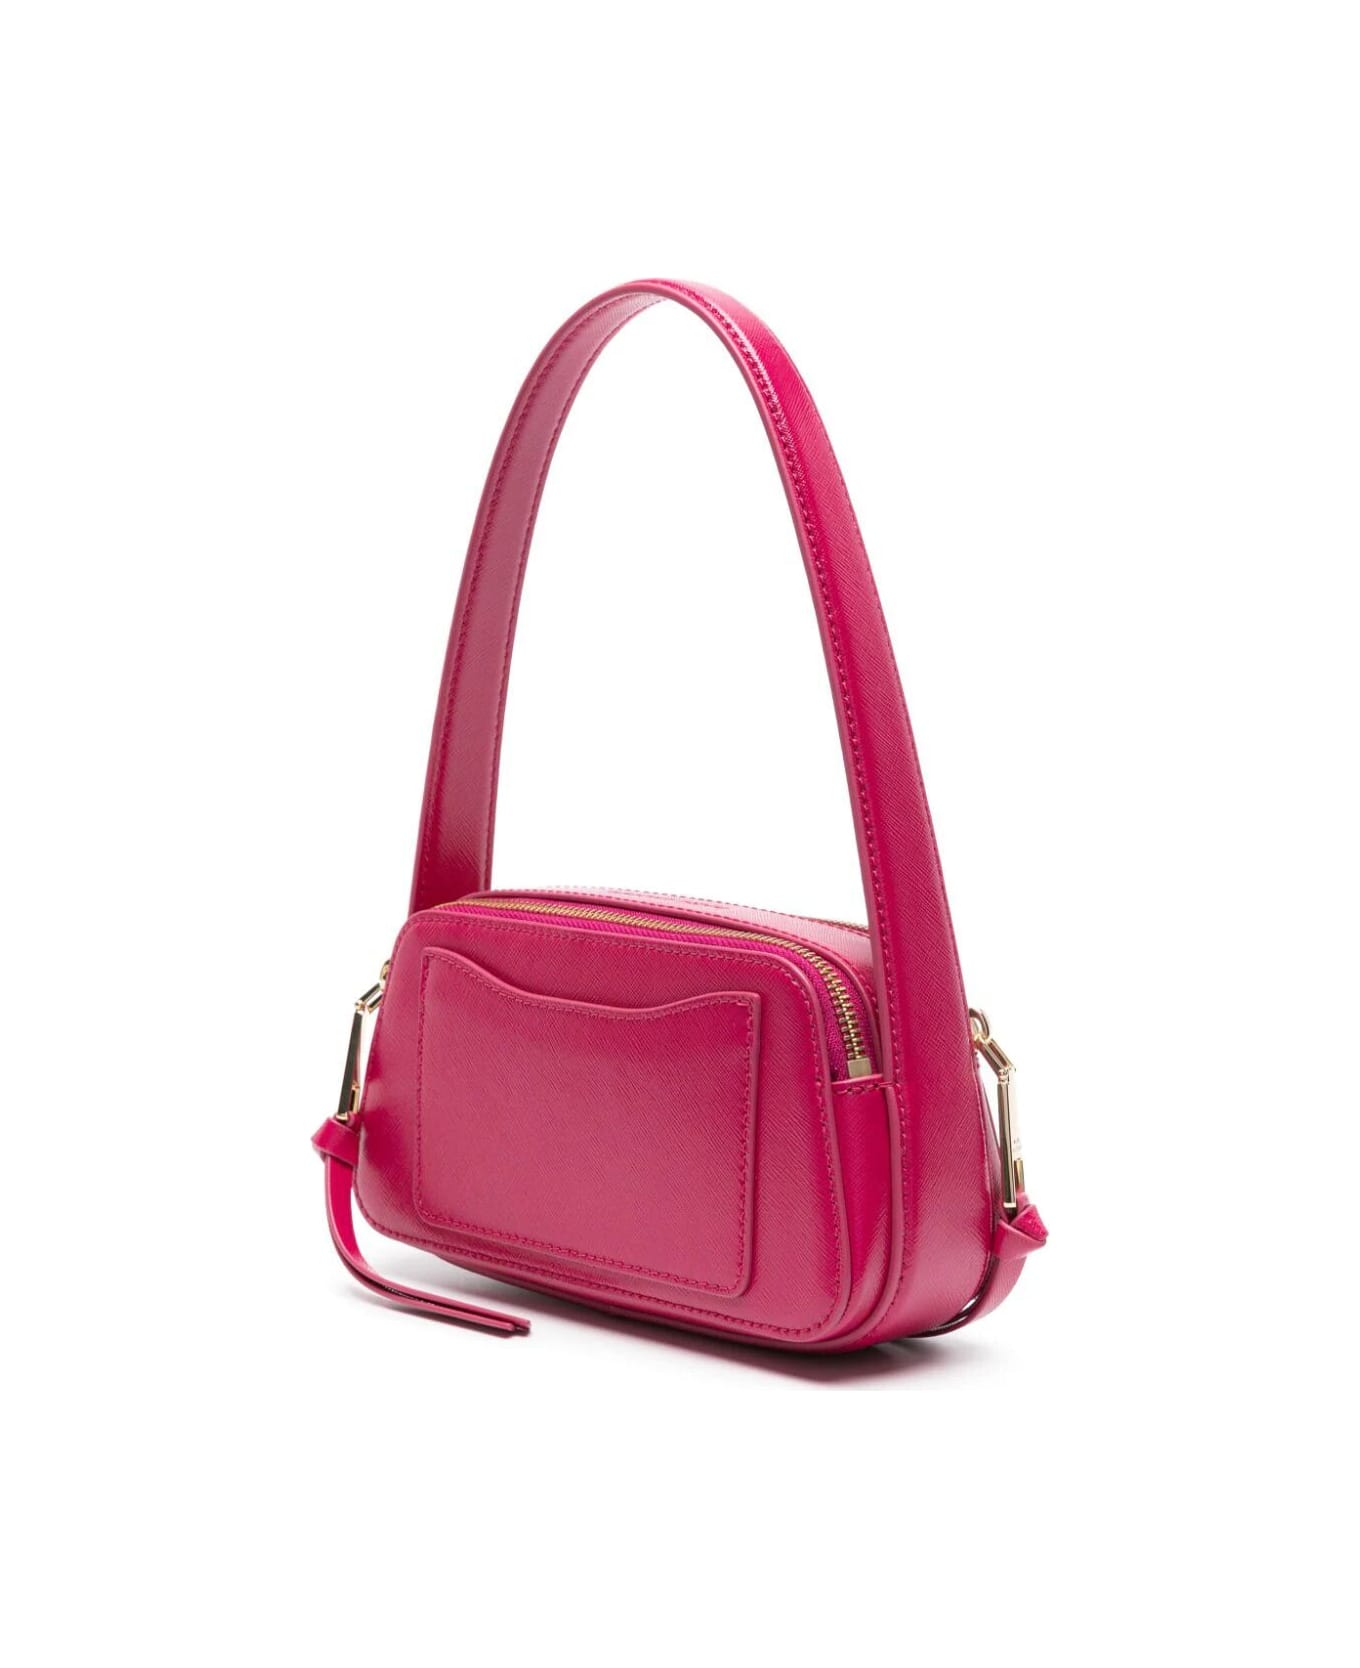 Marc Jacobs The Slingshot Shoulder Bag - Lipstick Pink